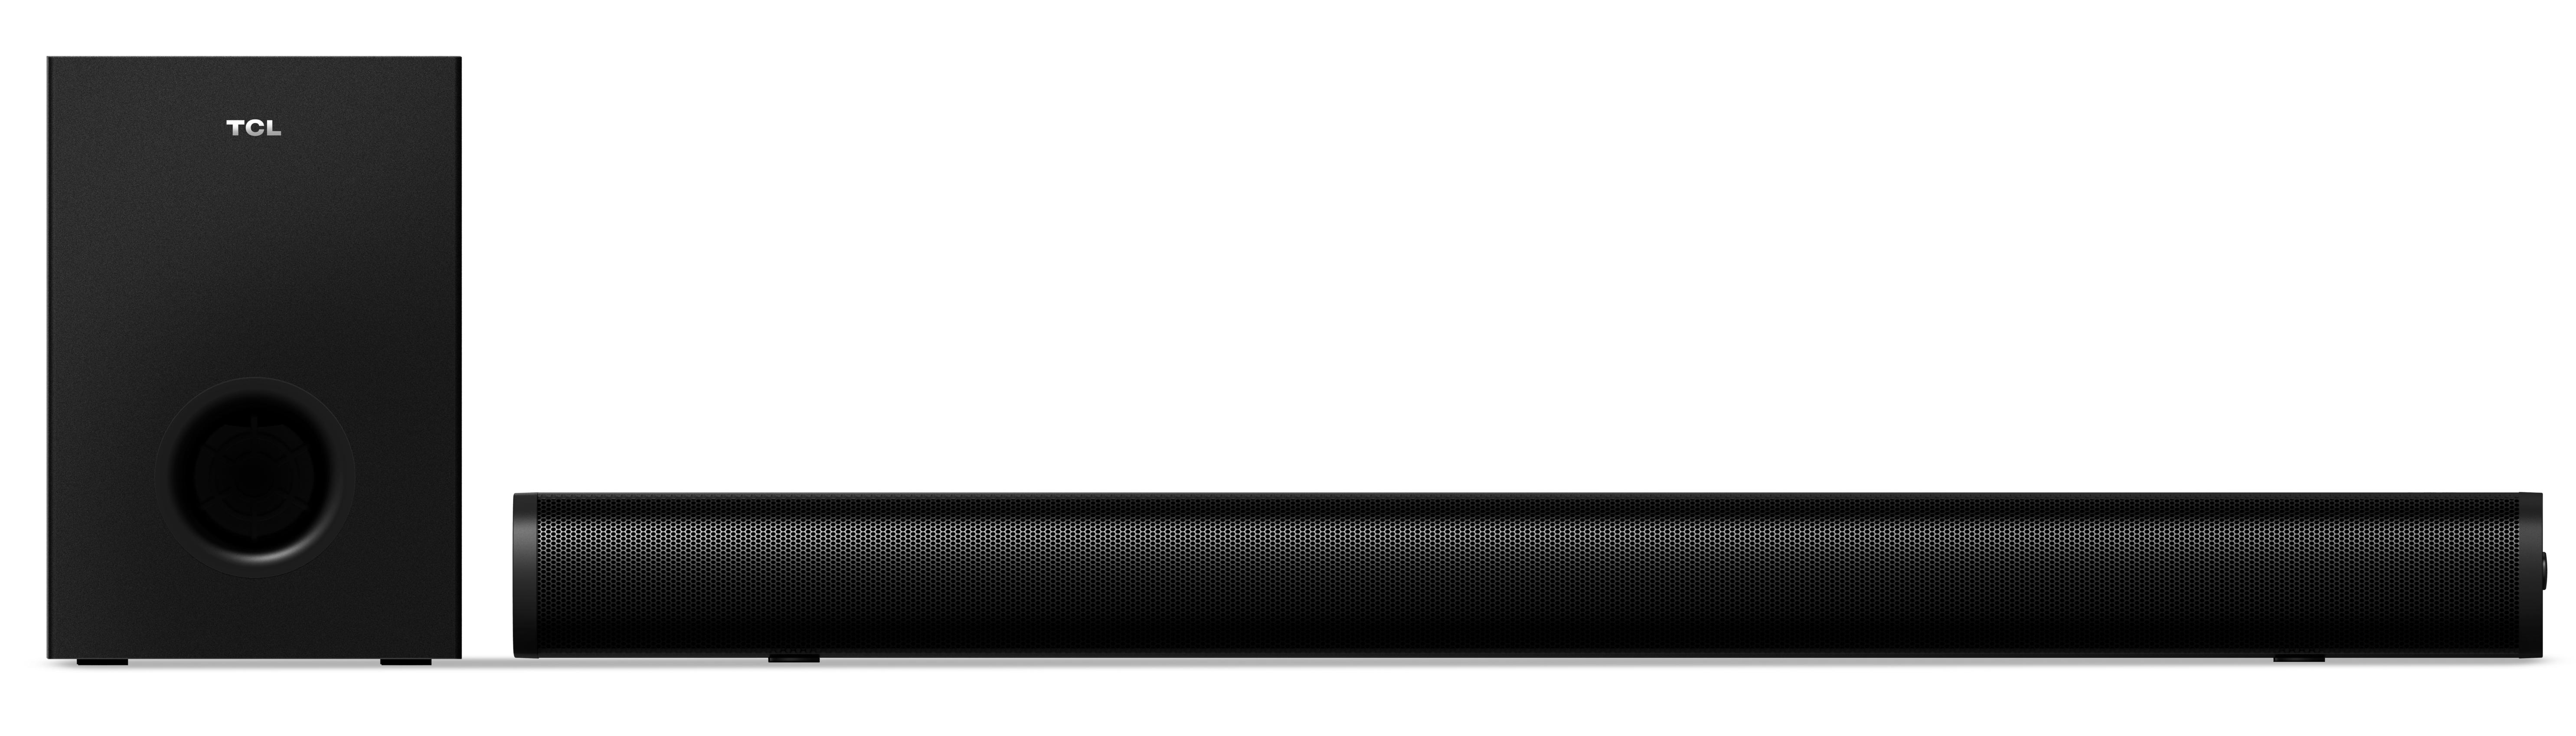 Offerta per Tcl - S Series S522W altoparlante soundbar Nero 2.1 canali 200 W a 74,9€ in Ipercoop